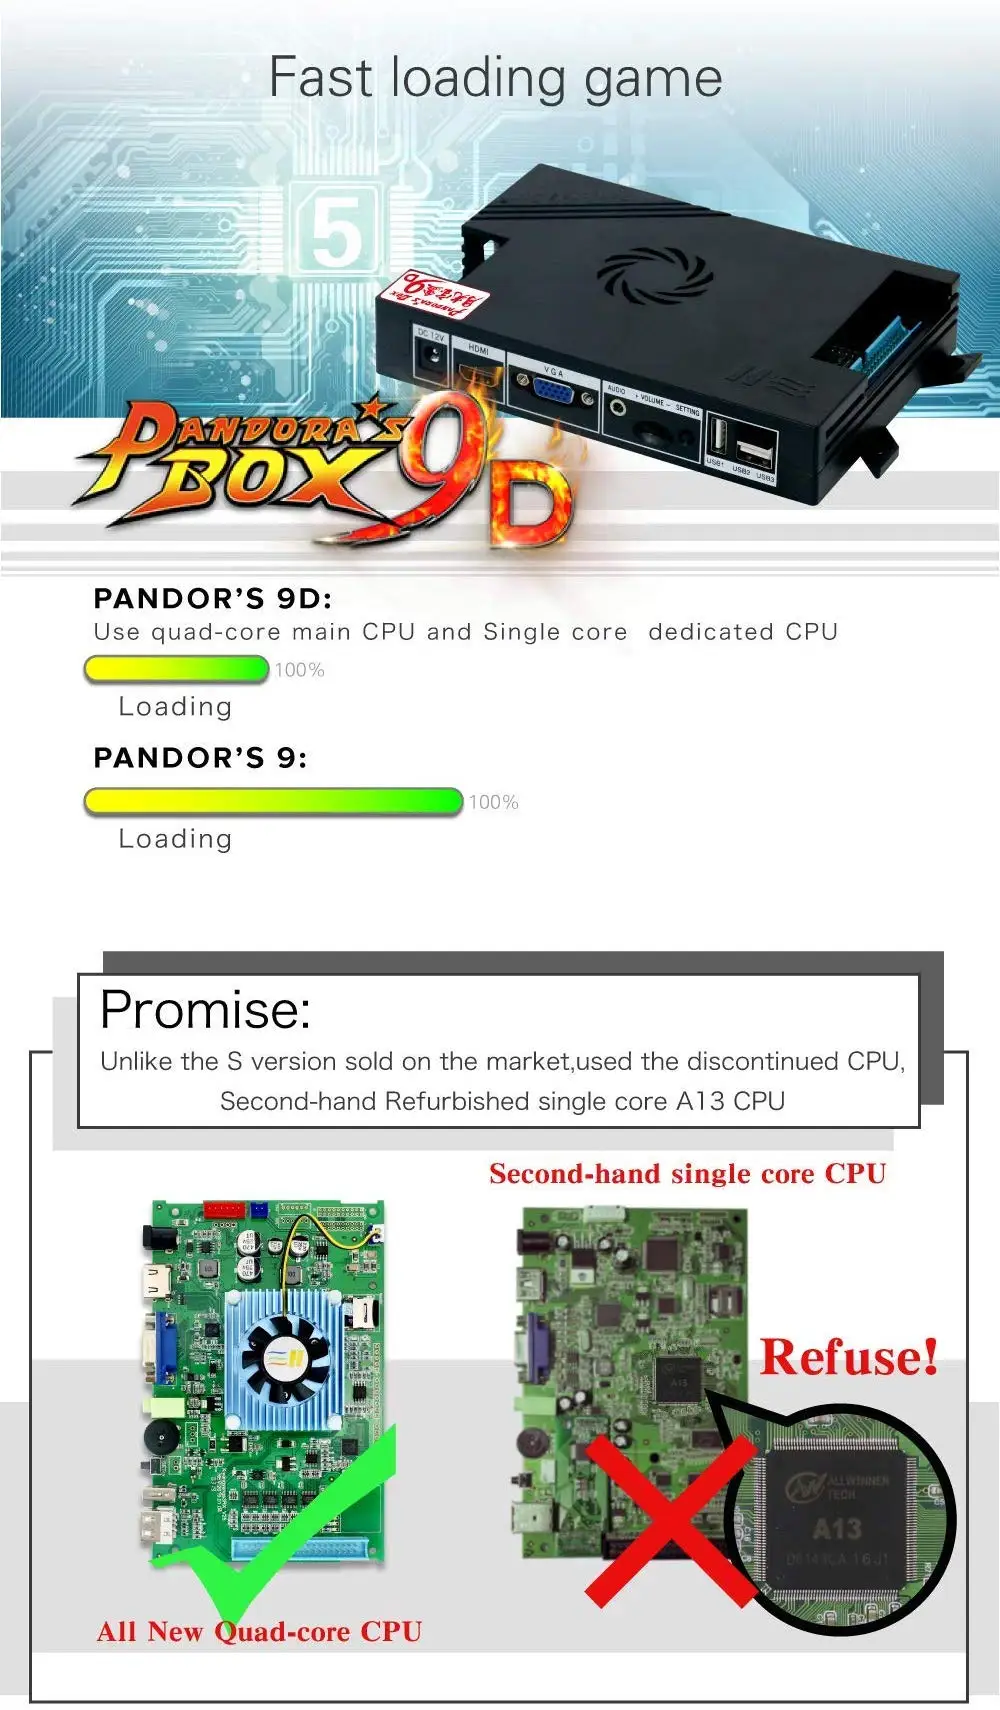 Встроенный ящик Pandora 9D 2222 в 1 аркадная игровая консоль 2 игрока джойстик кнопки игровая машина Поддержка VGA/HDMI USB выход